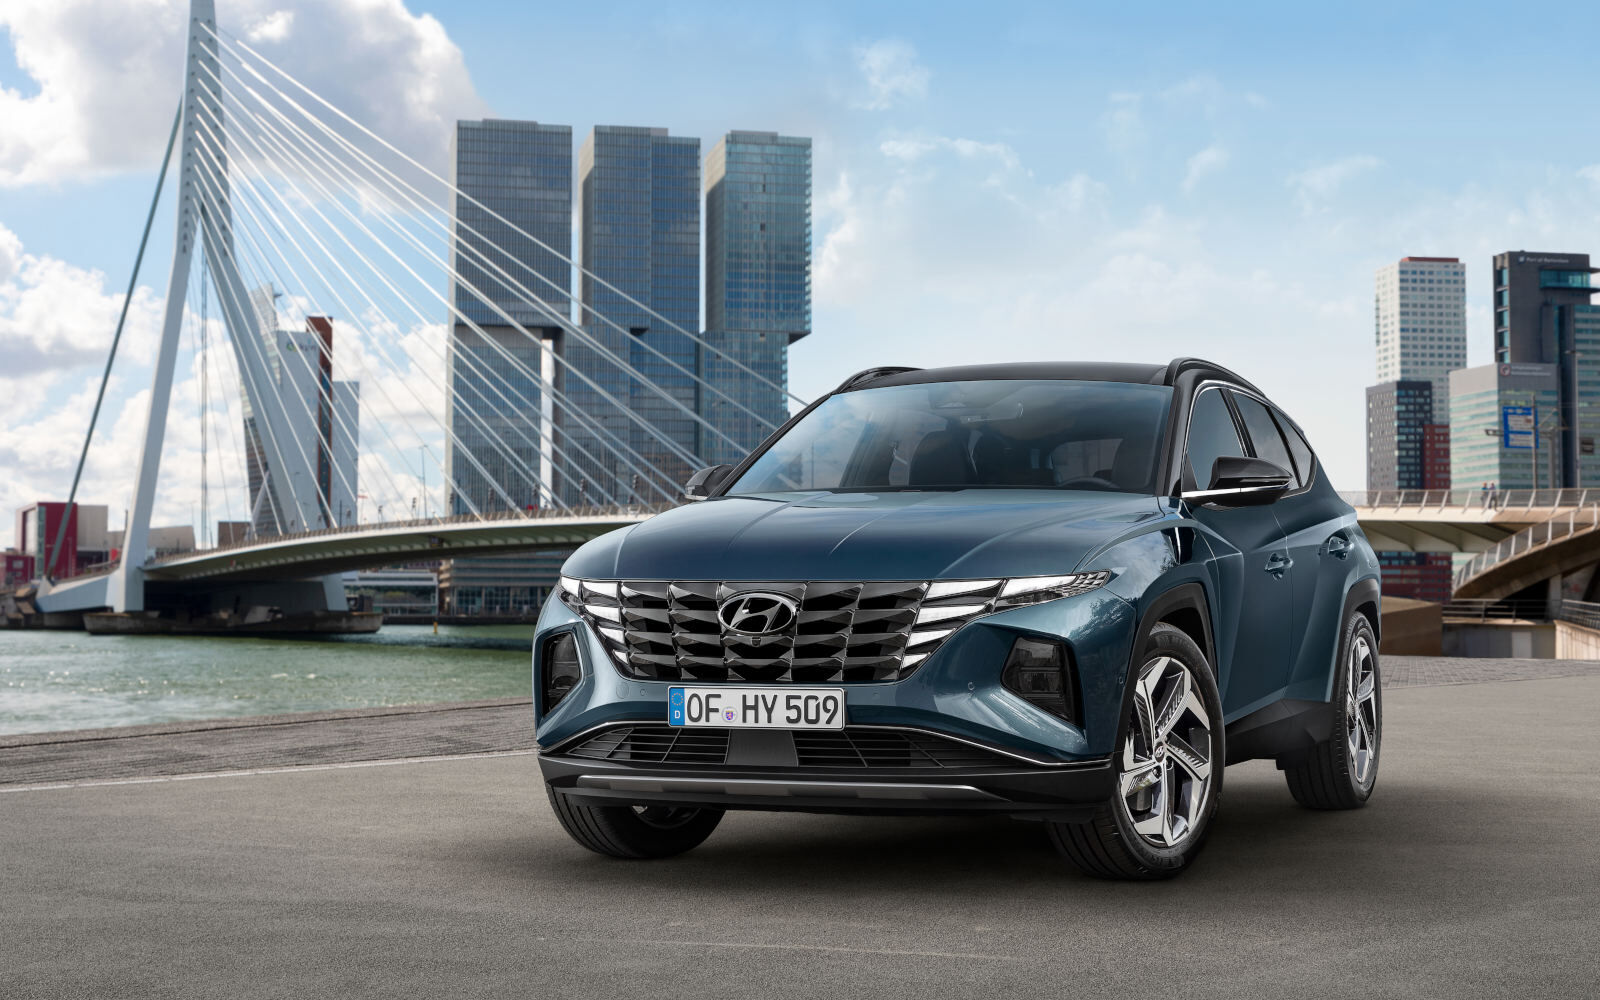 Nowy Hyundai Tucson europejska gama i najfajniejsze gadżety